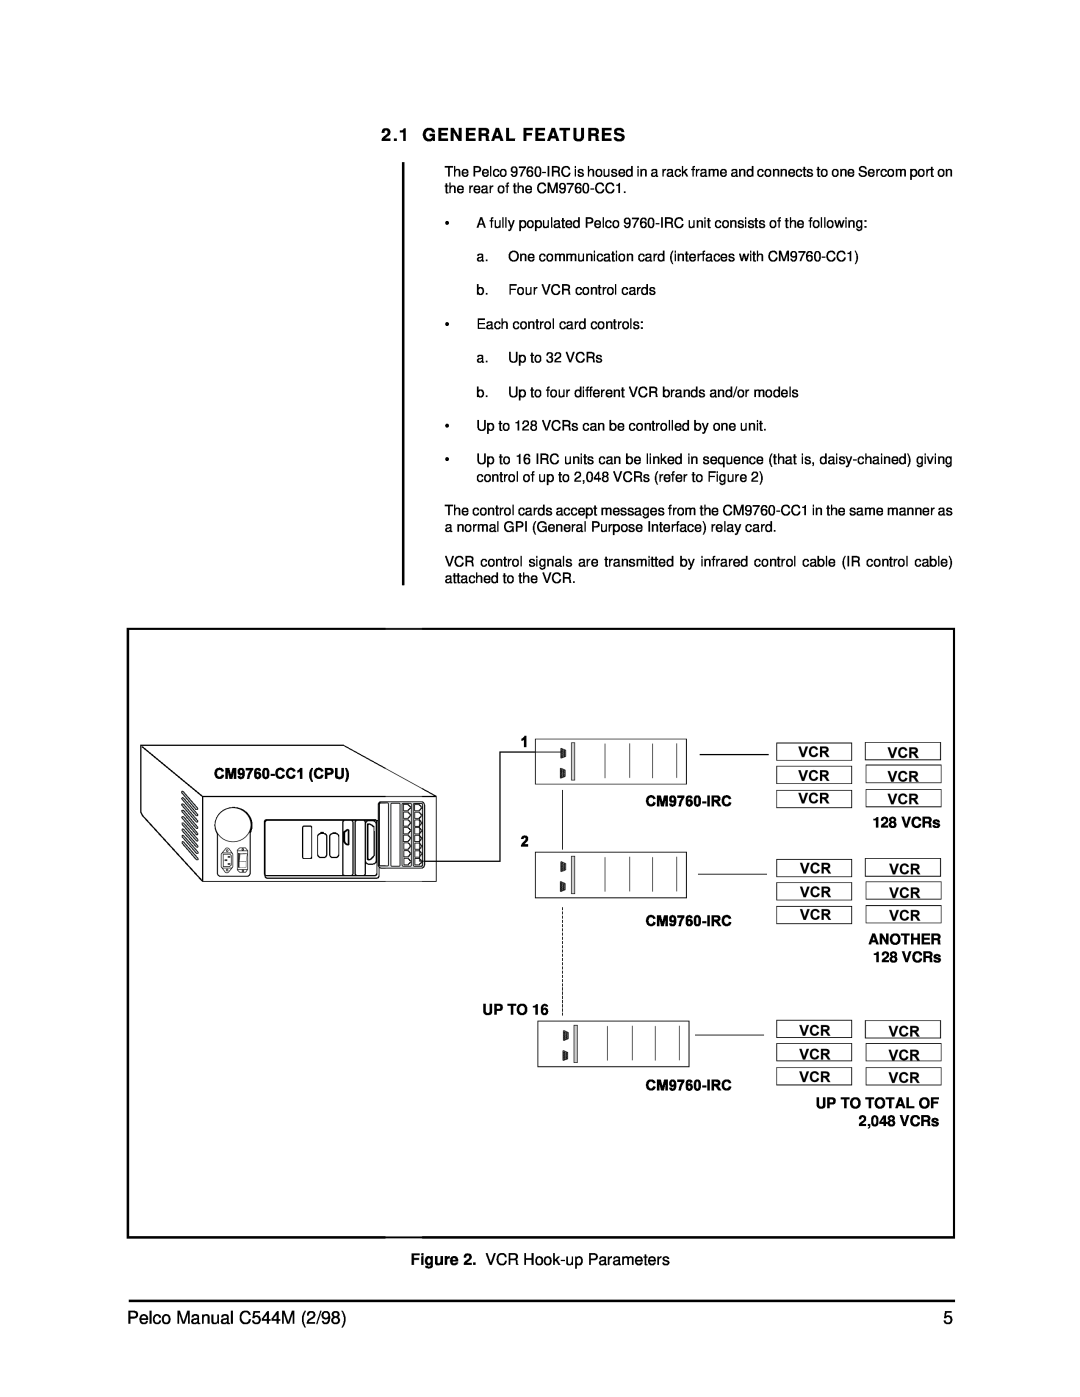 Pelco C538M manual General Features, Pelco Manual C544M 2/98, VCR Hook-upParameters 